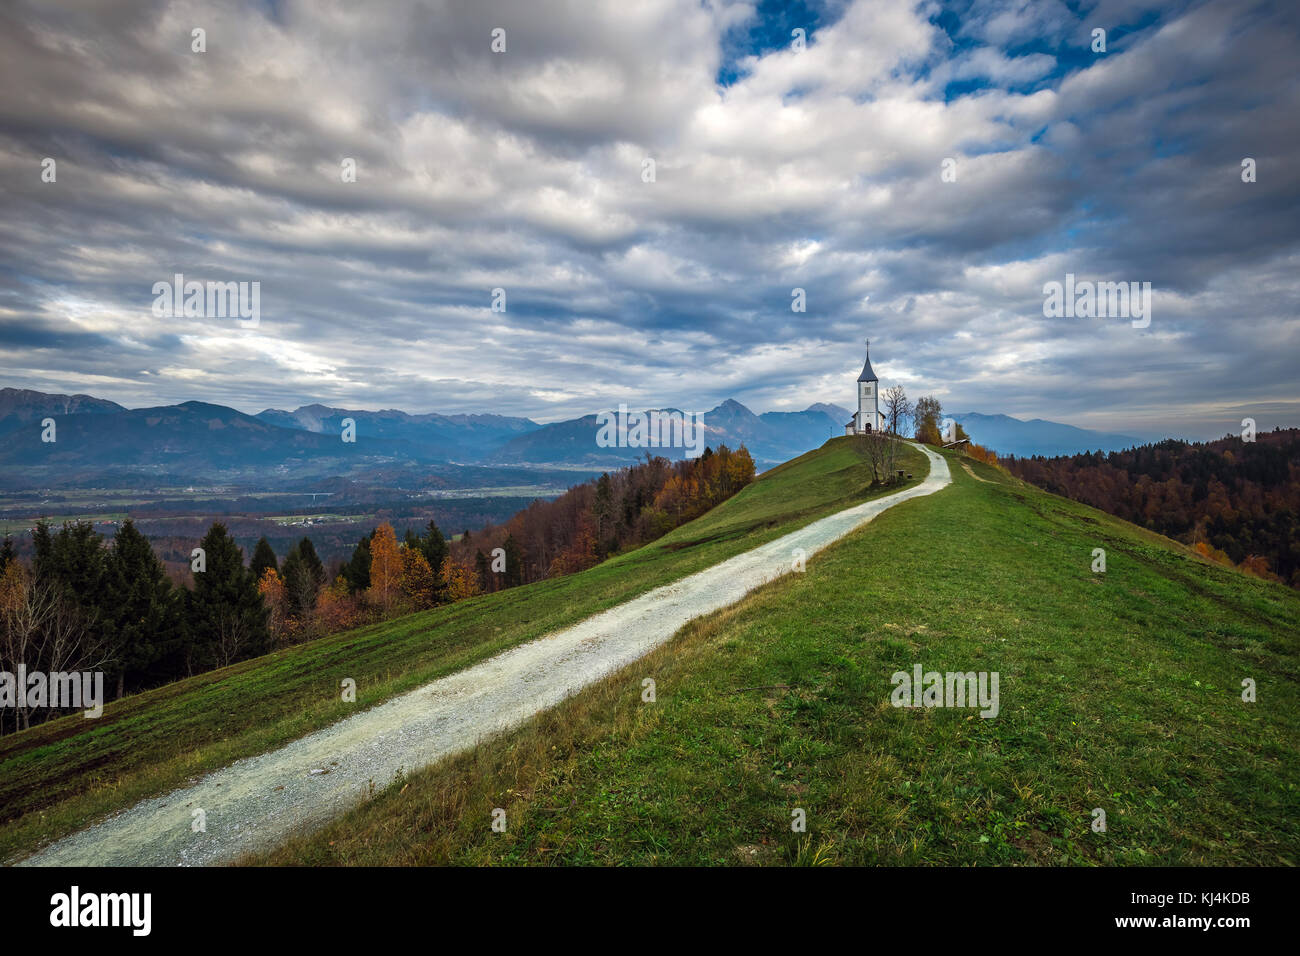 Jamnik, Slowenien - Die schöne Kirche St. Primoz in Slowenien in der Nähe von Jamnik mit wunderschönen Wolken und Julischen Alpen im Hintergrund Stockfoto